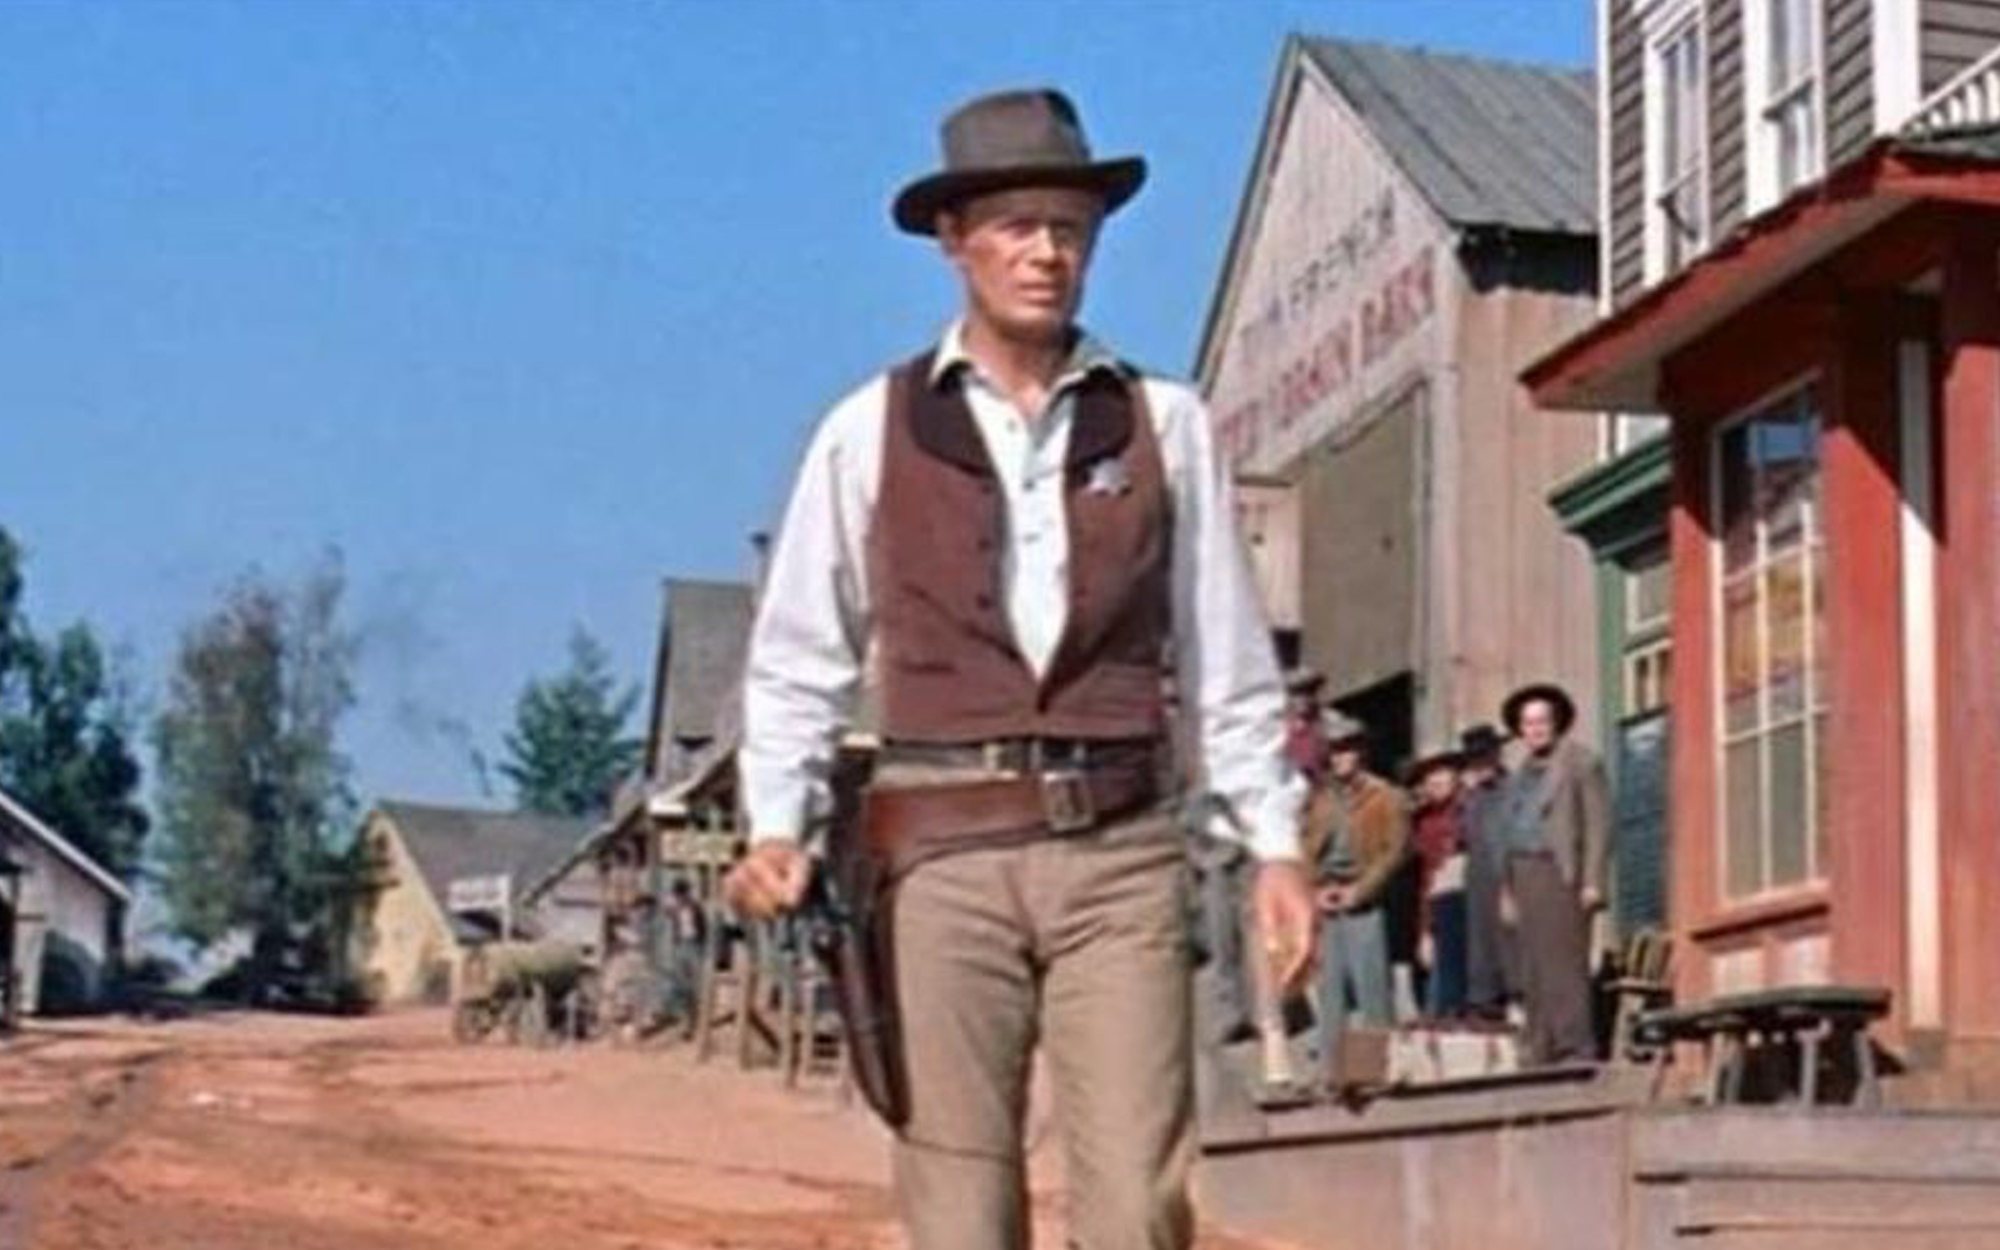 El 'Cine western' (4,7%) de Trece se corona como lo más visto del día con "El hombre de la pistola de oro"